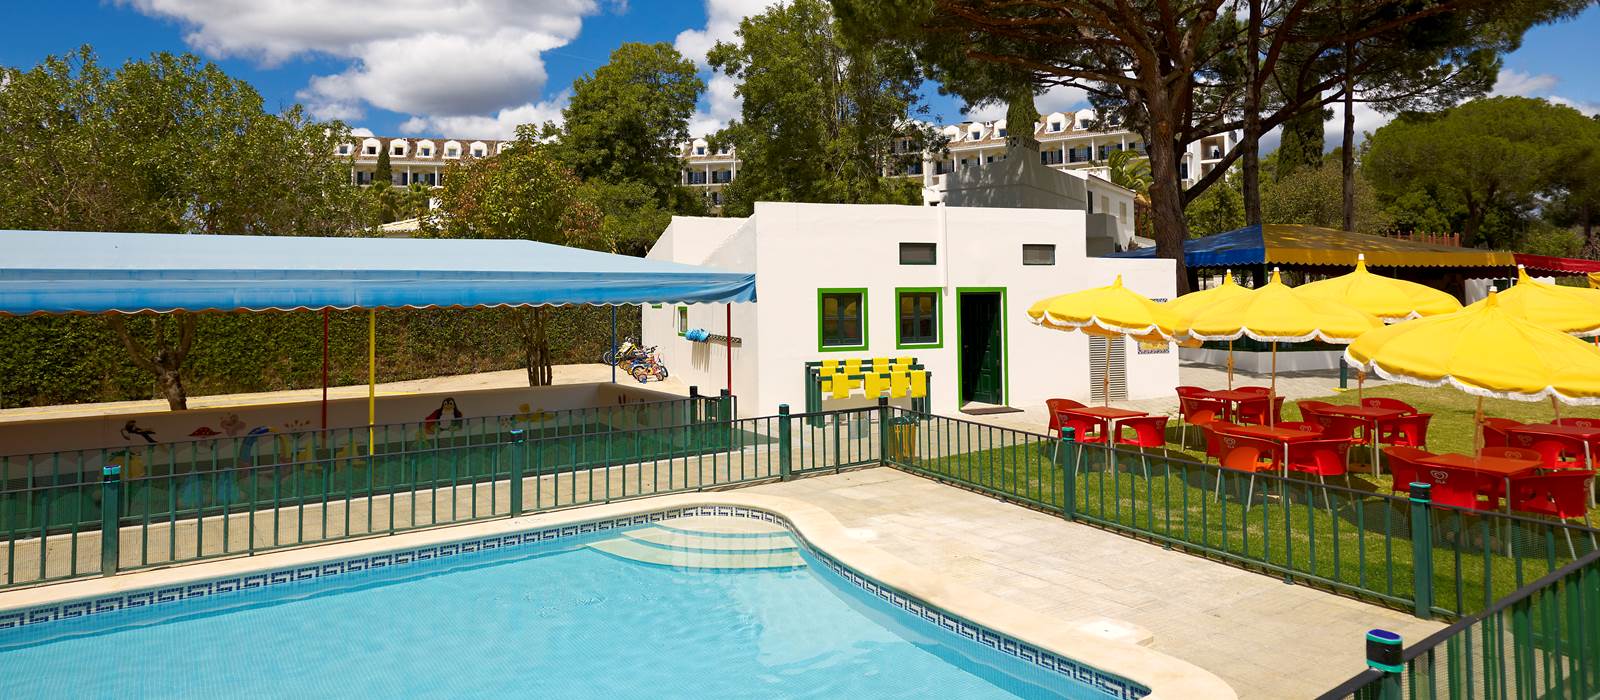 Pool at the Kangaroo Kids Club at Penina Hotel and Golf Resort